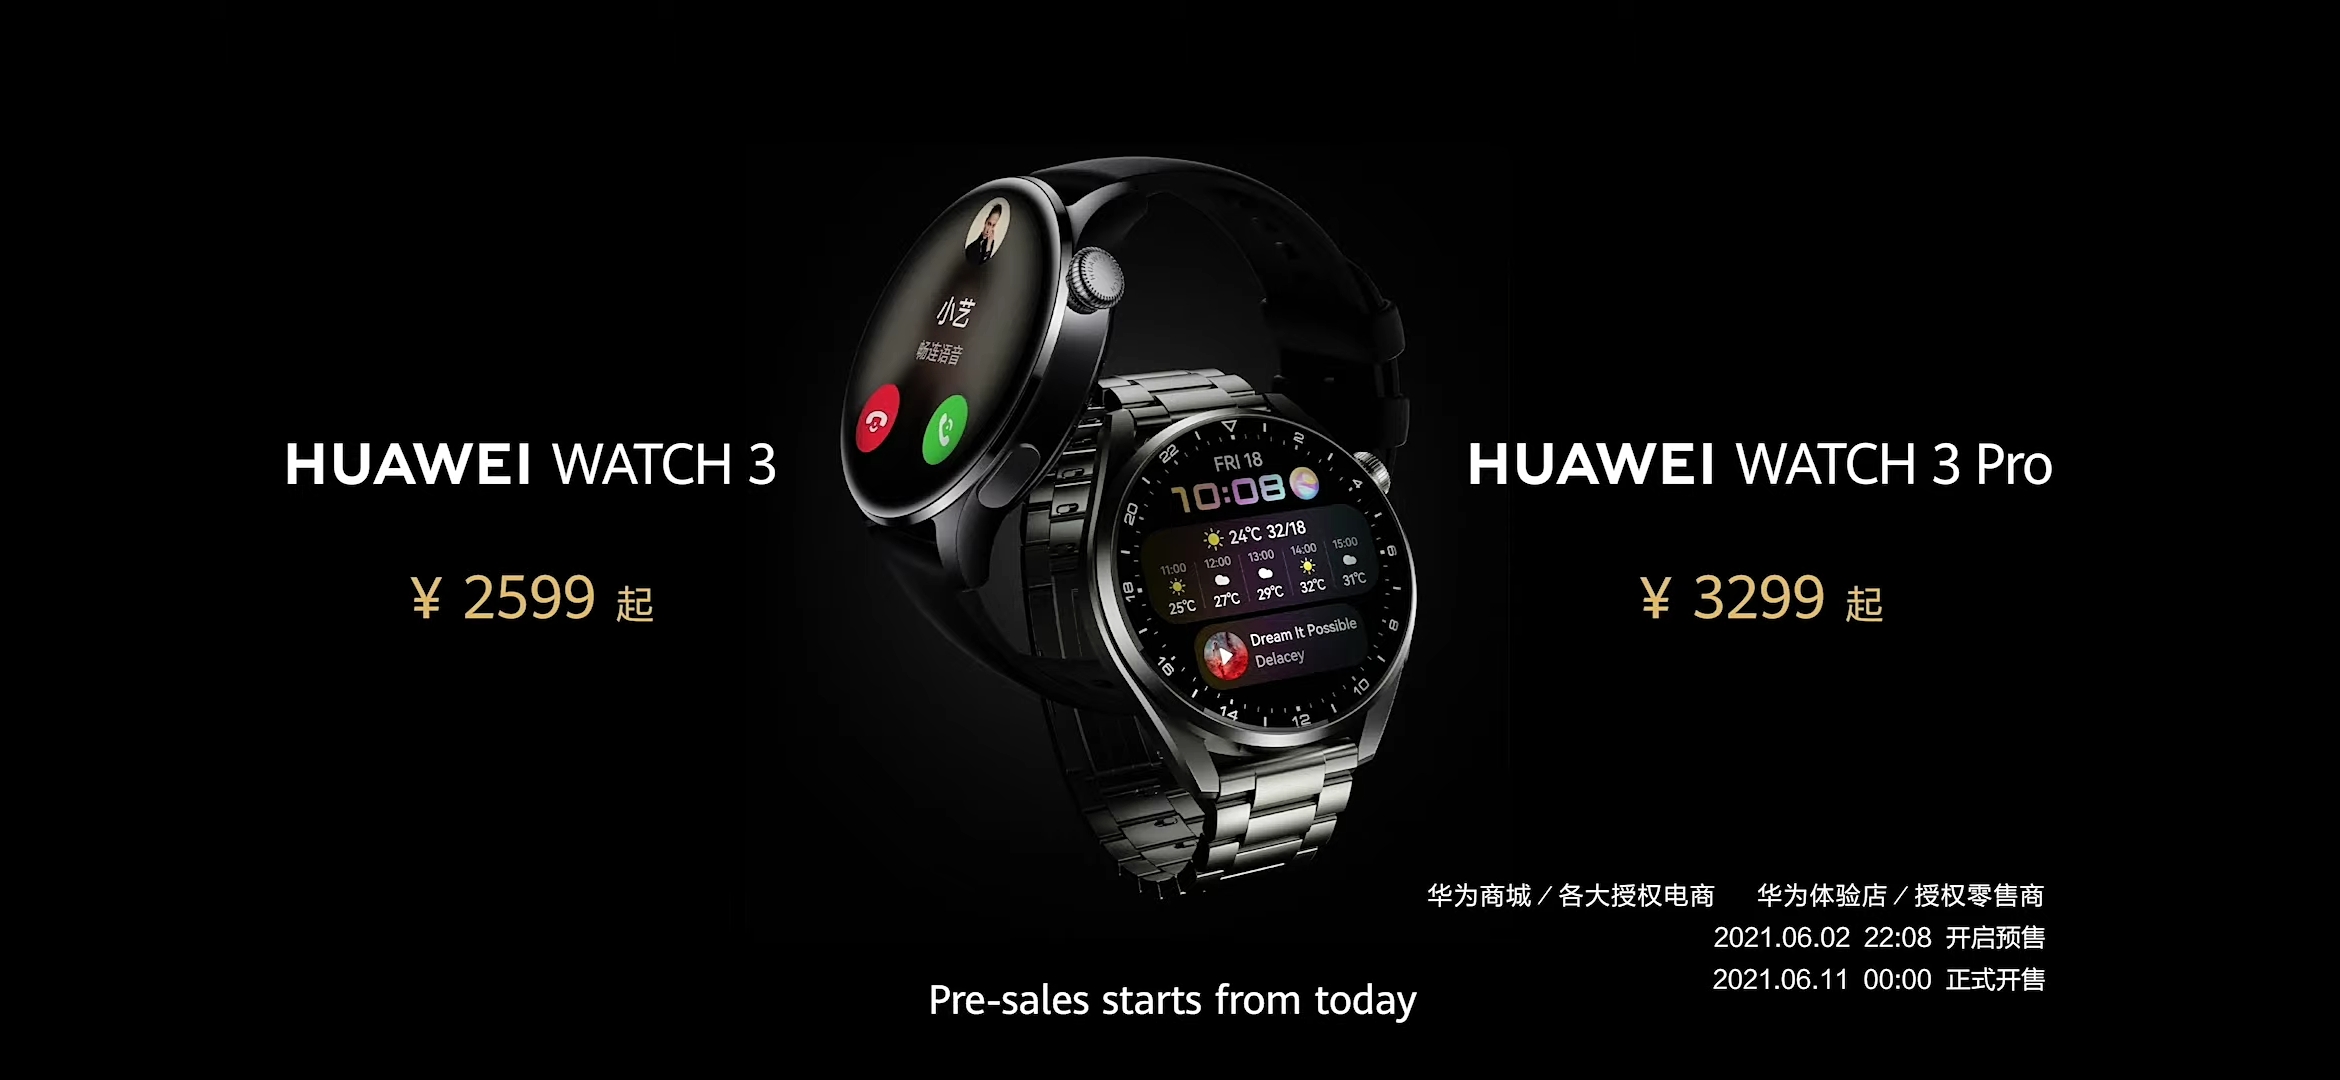 Watch 3 price huawei Huawei Watch